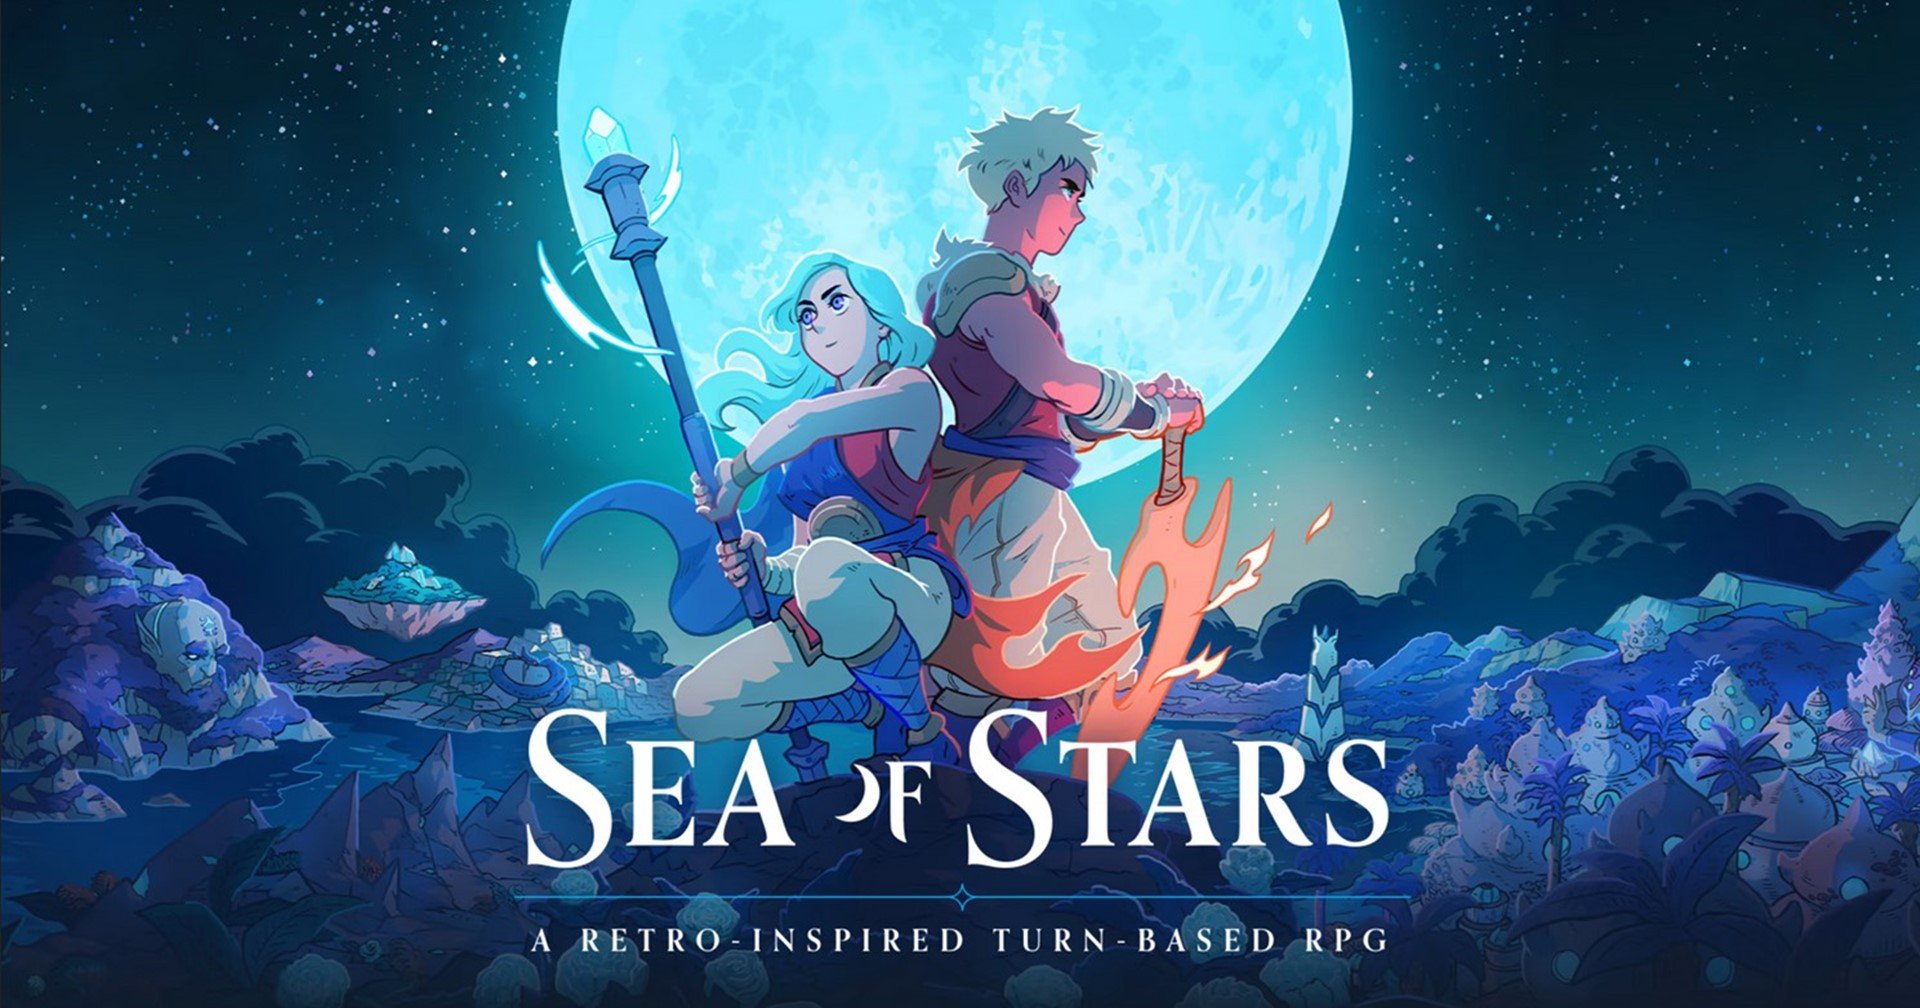 [บทความ] แนะนำเกมน่าเล่น Sea of Stars (เดโม) ยำรวมตำนาน RPG ในเกมเดียว